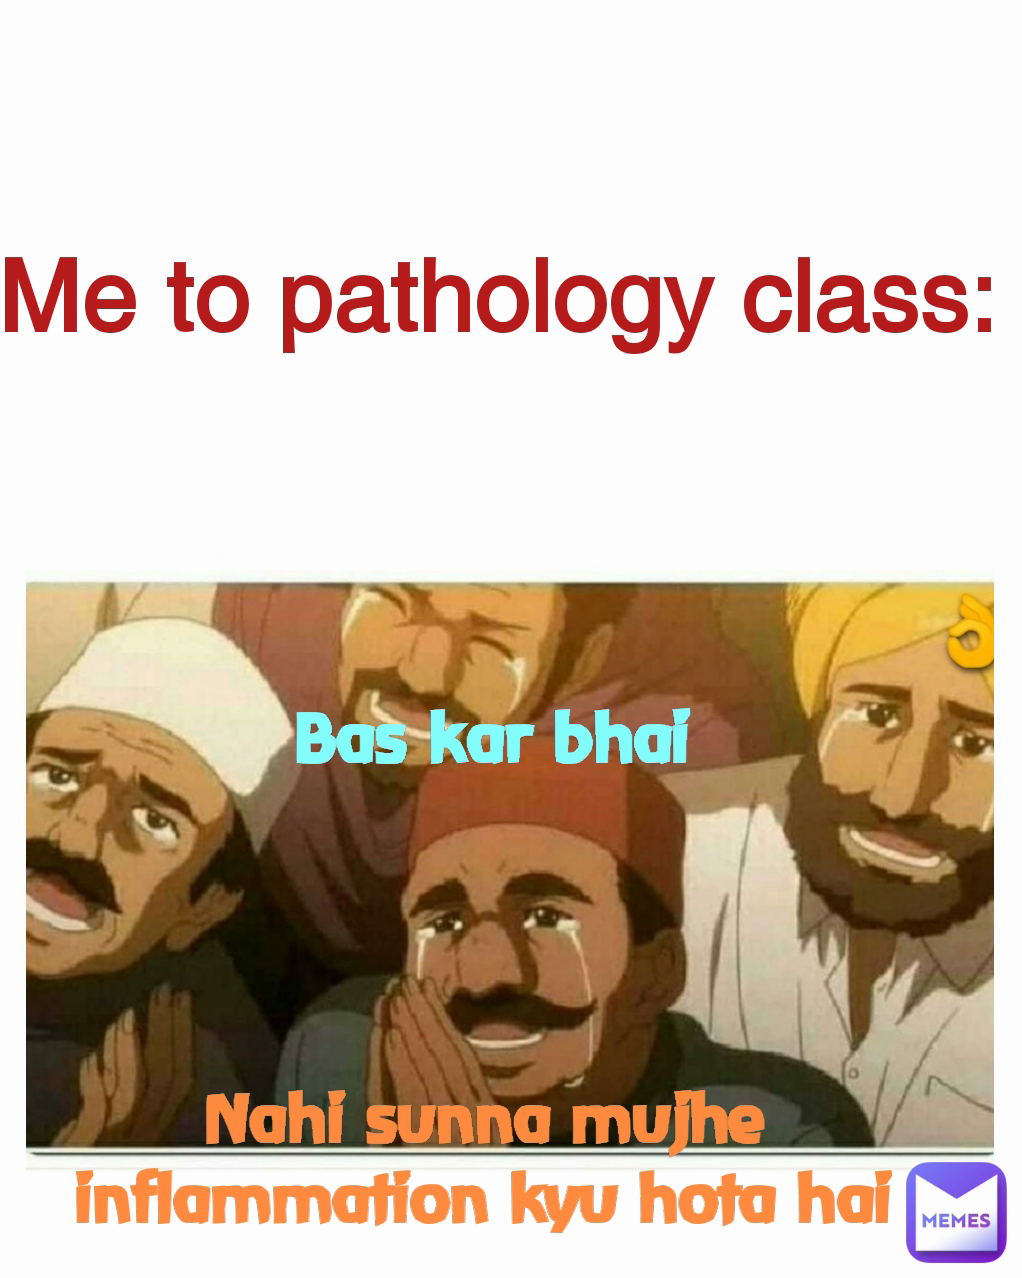 Bas kar bhai  Me to pathology class: Nahi sunna mujhe inflammation kyu hota hai